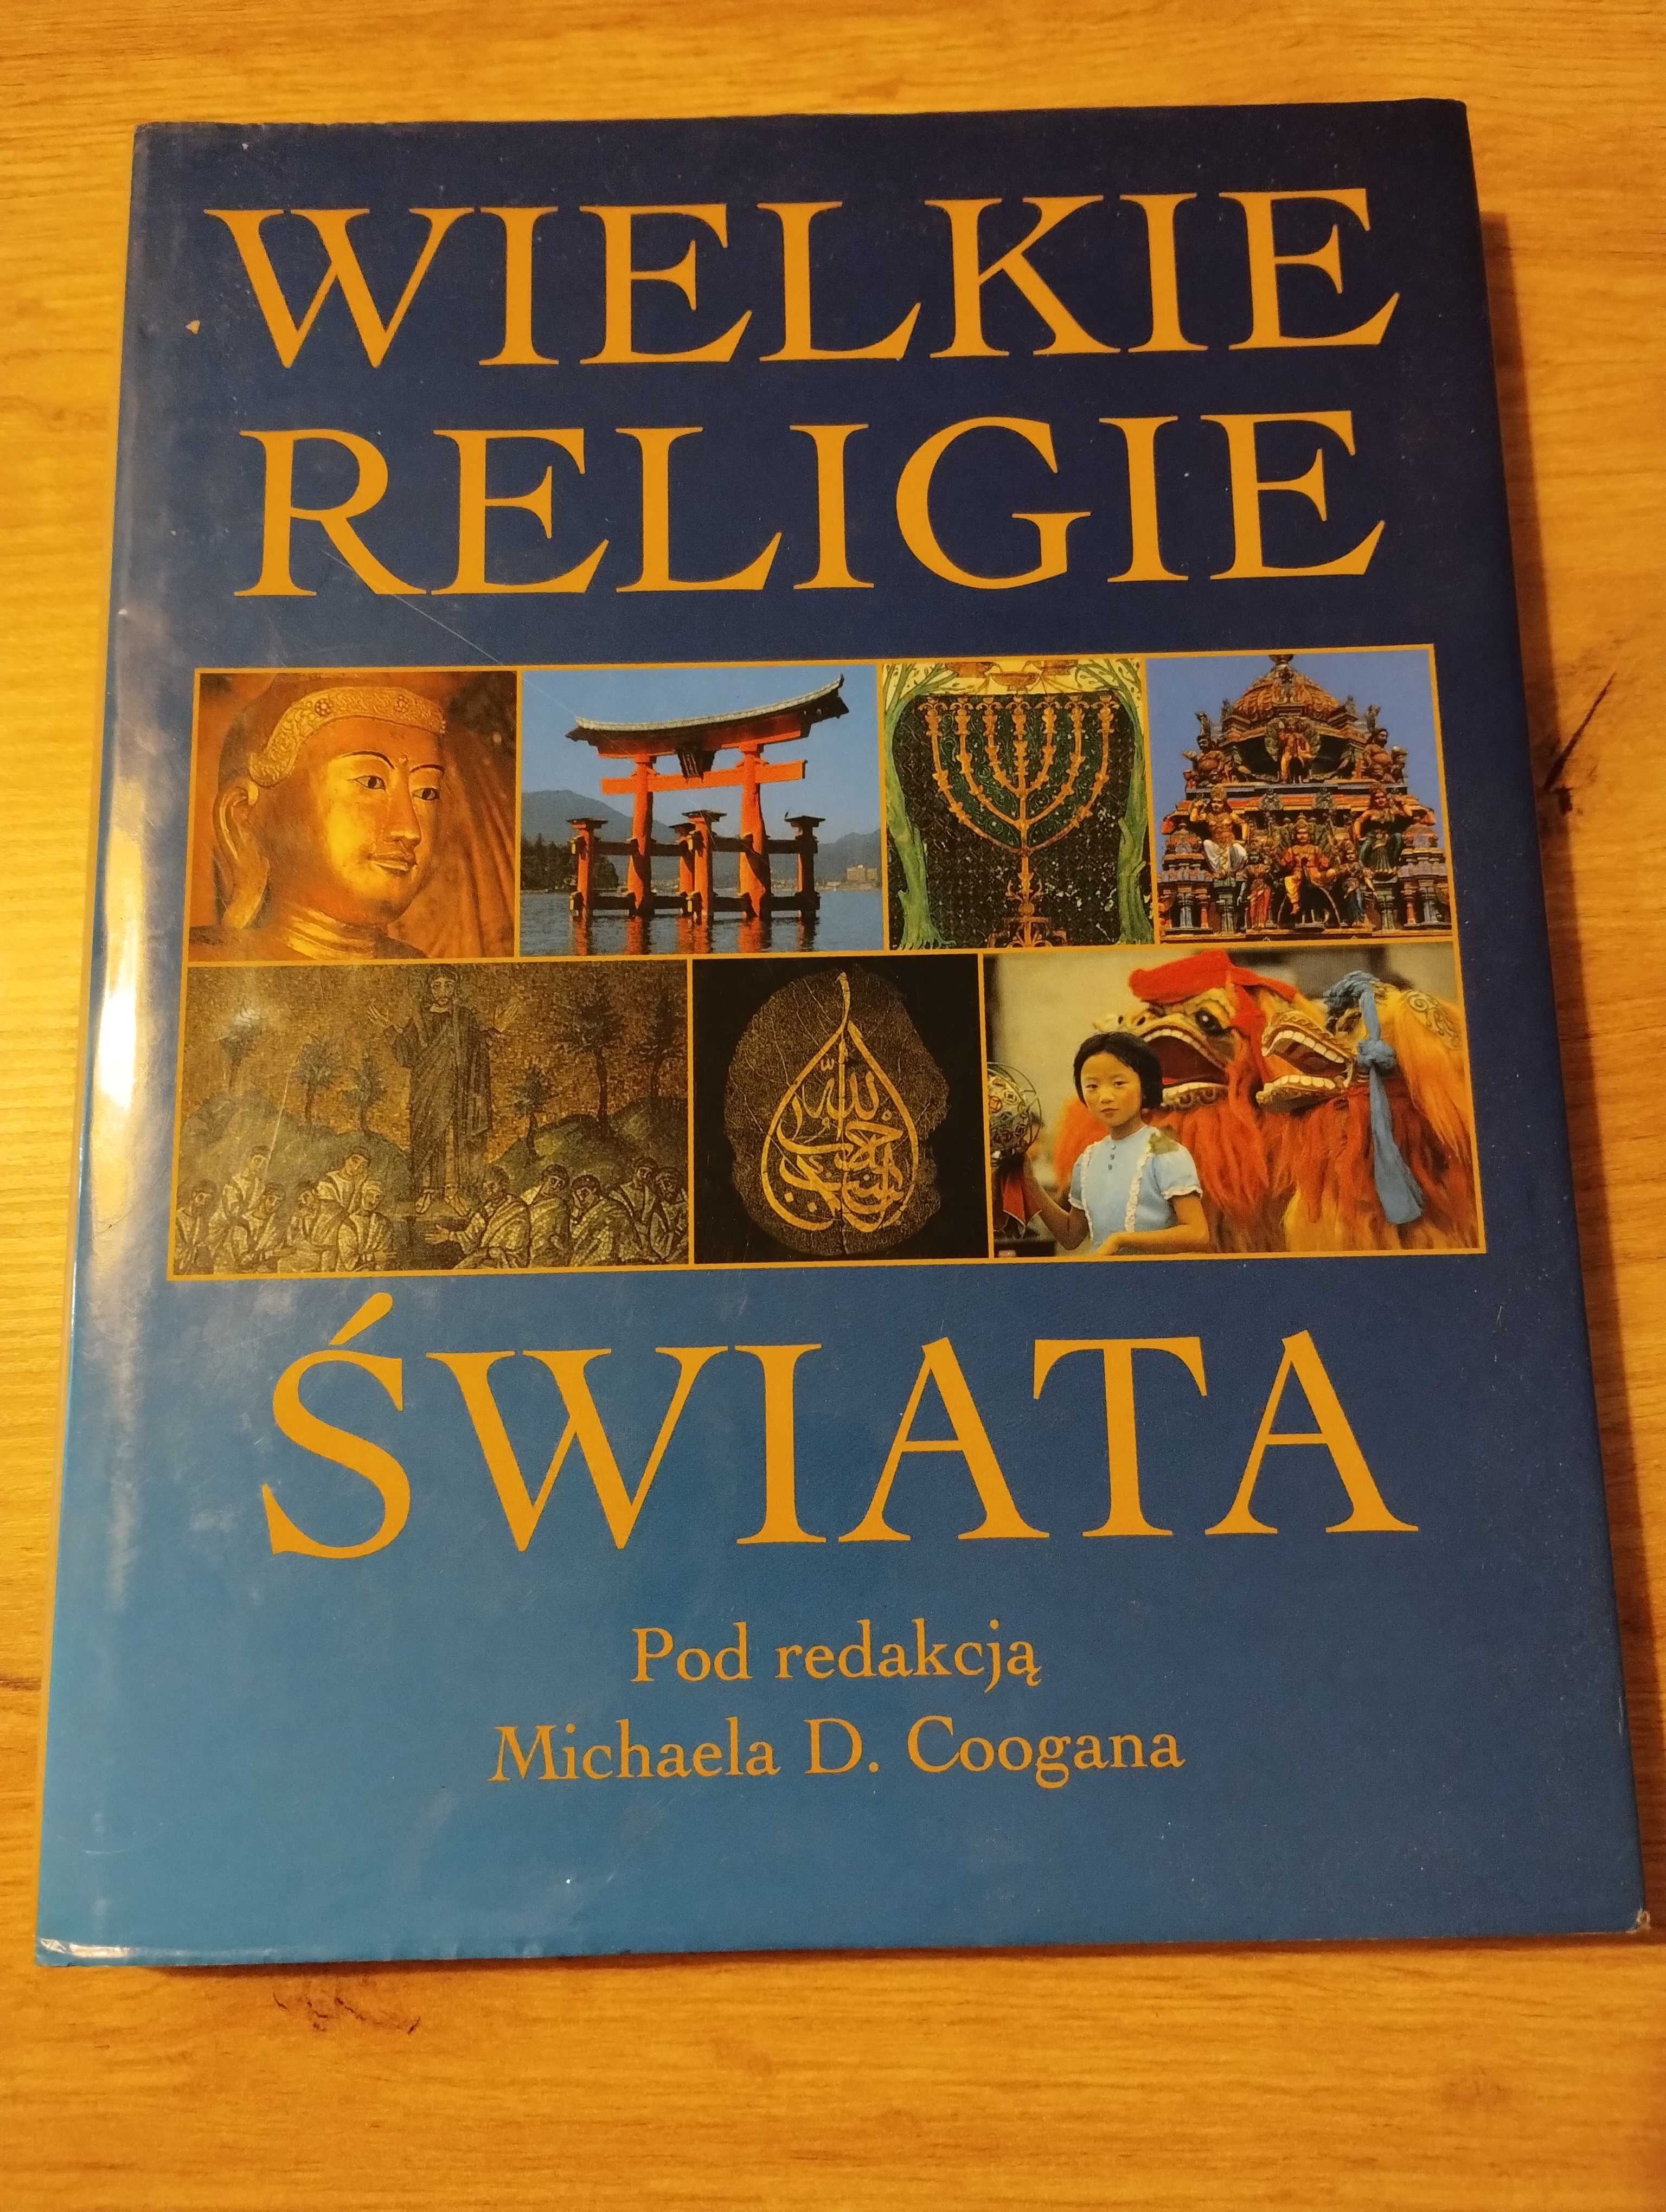 Wielkie religie świata pod redakcją Michaela D. Coogana